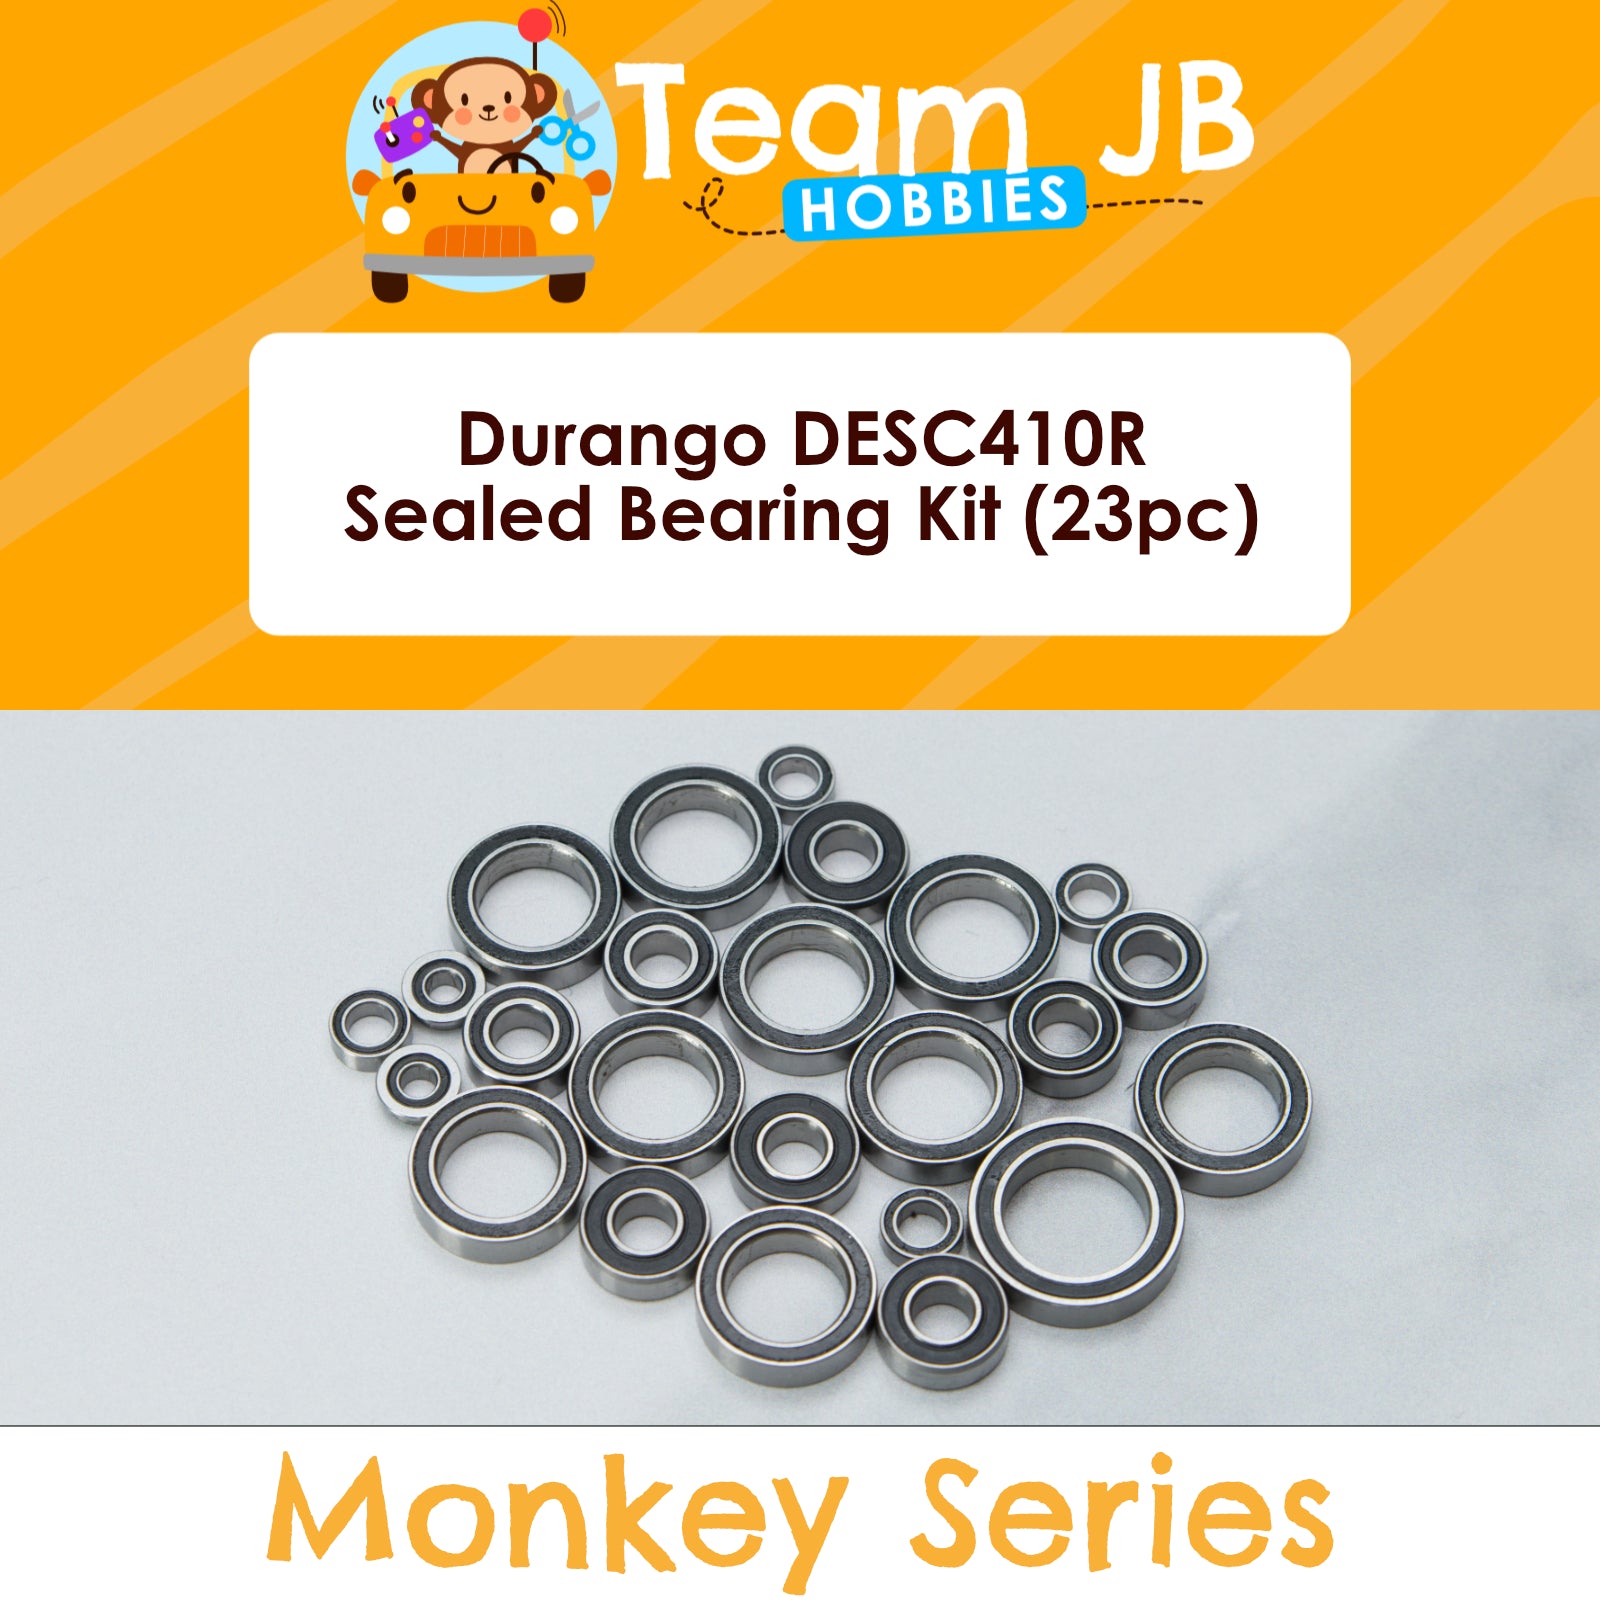 Durango DESC410R - Sealed Bearing Kit